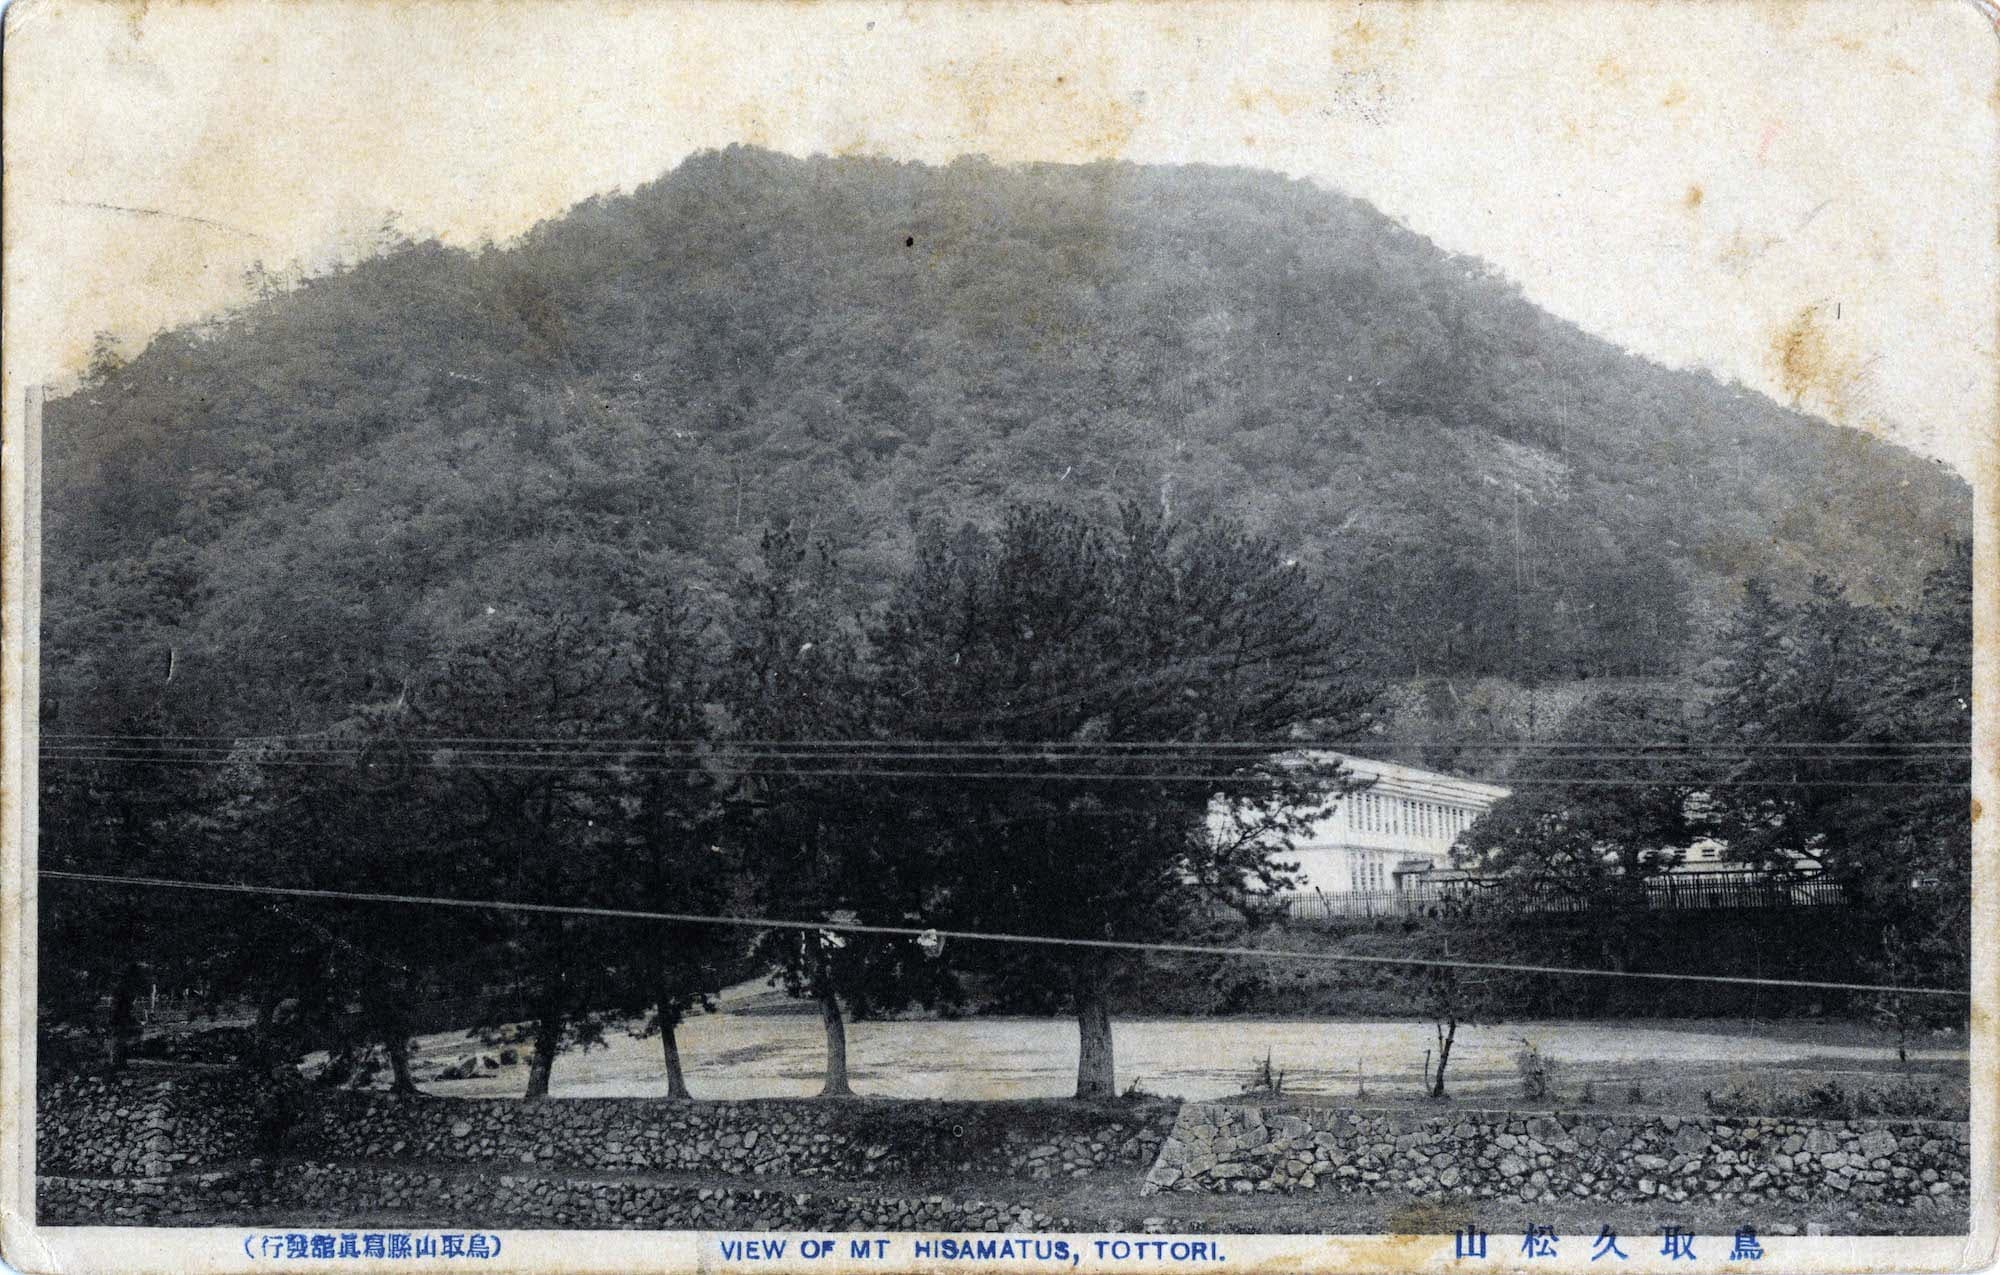 鳥取久松山's image 1